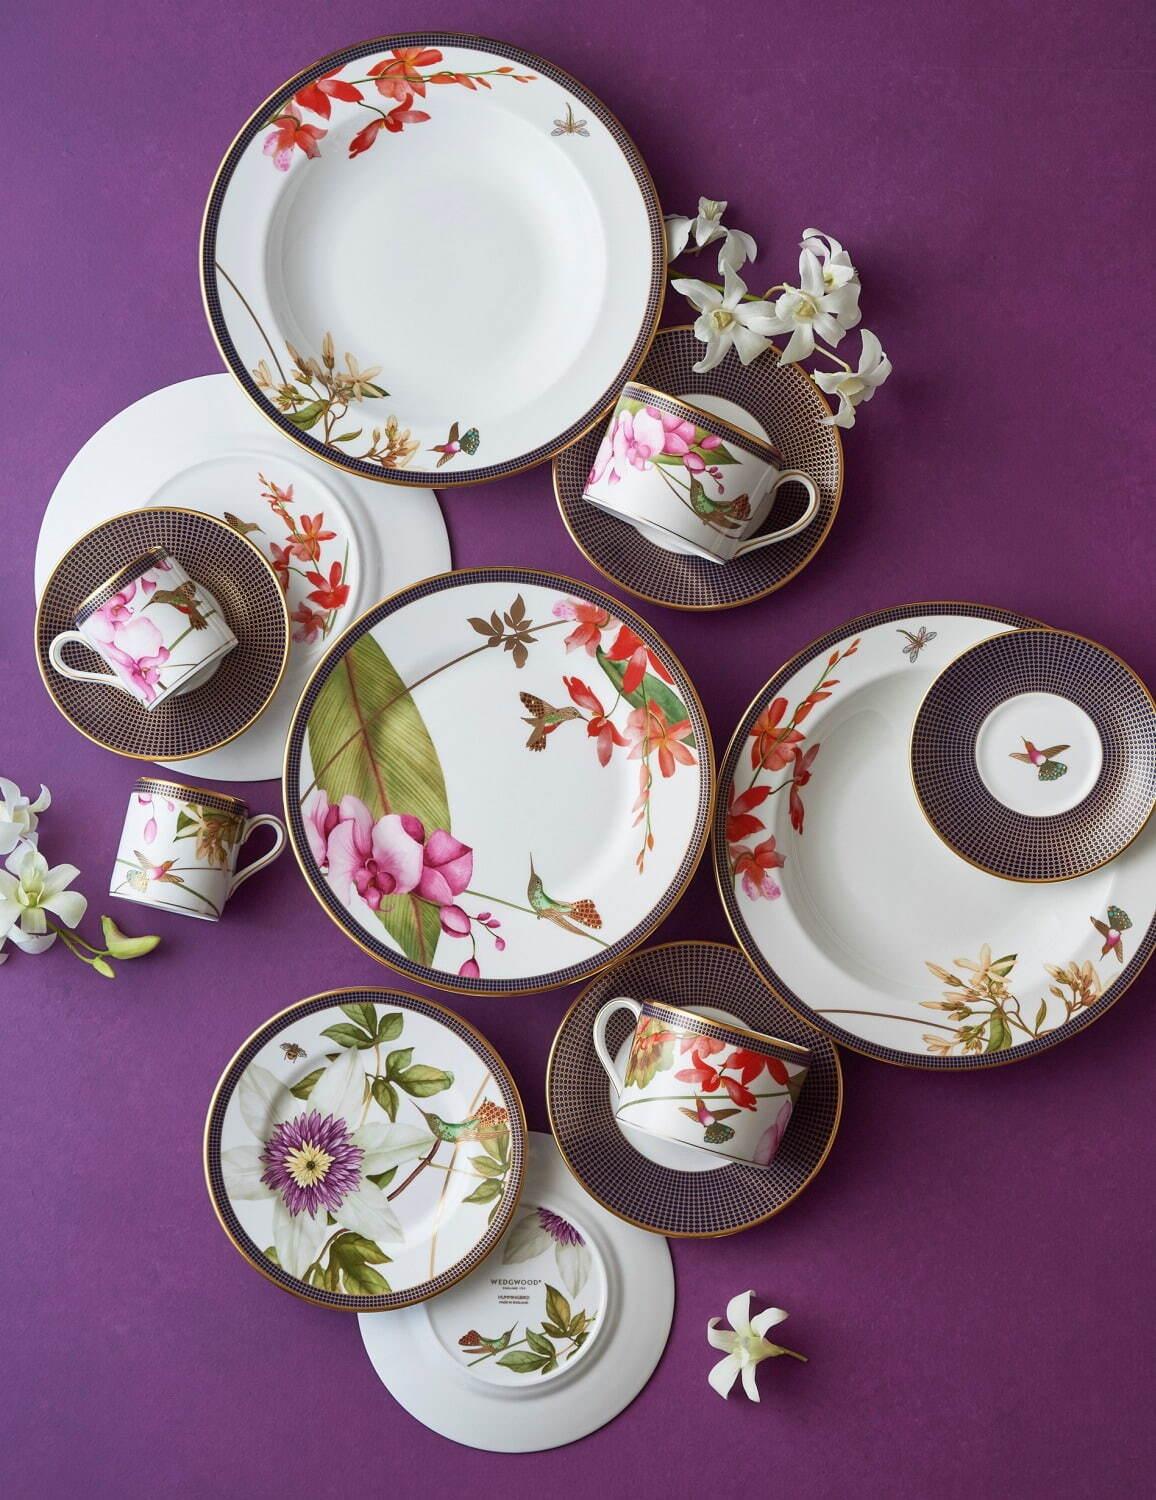 ウェッジウッド“羽ばたく宝石”ハチドリの新作テーブルウェア、ミツバチ＆蘭の花も描いて コピー